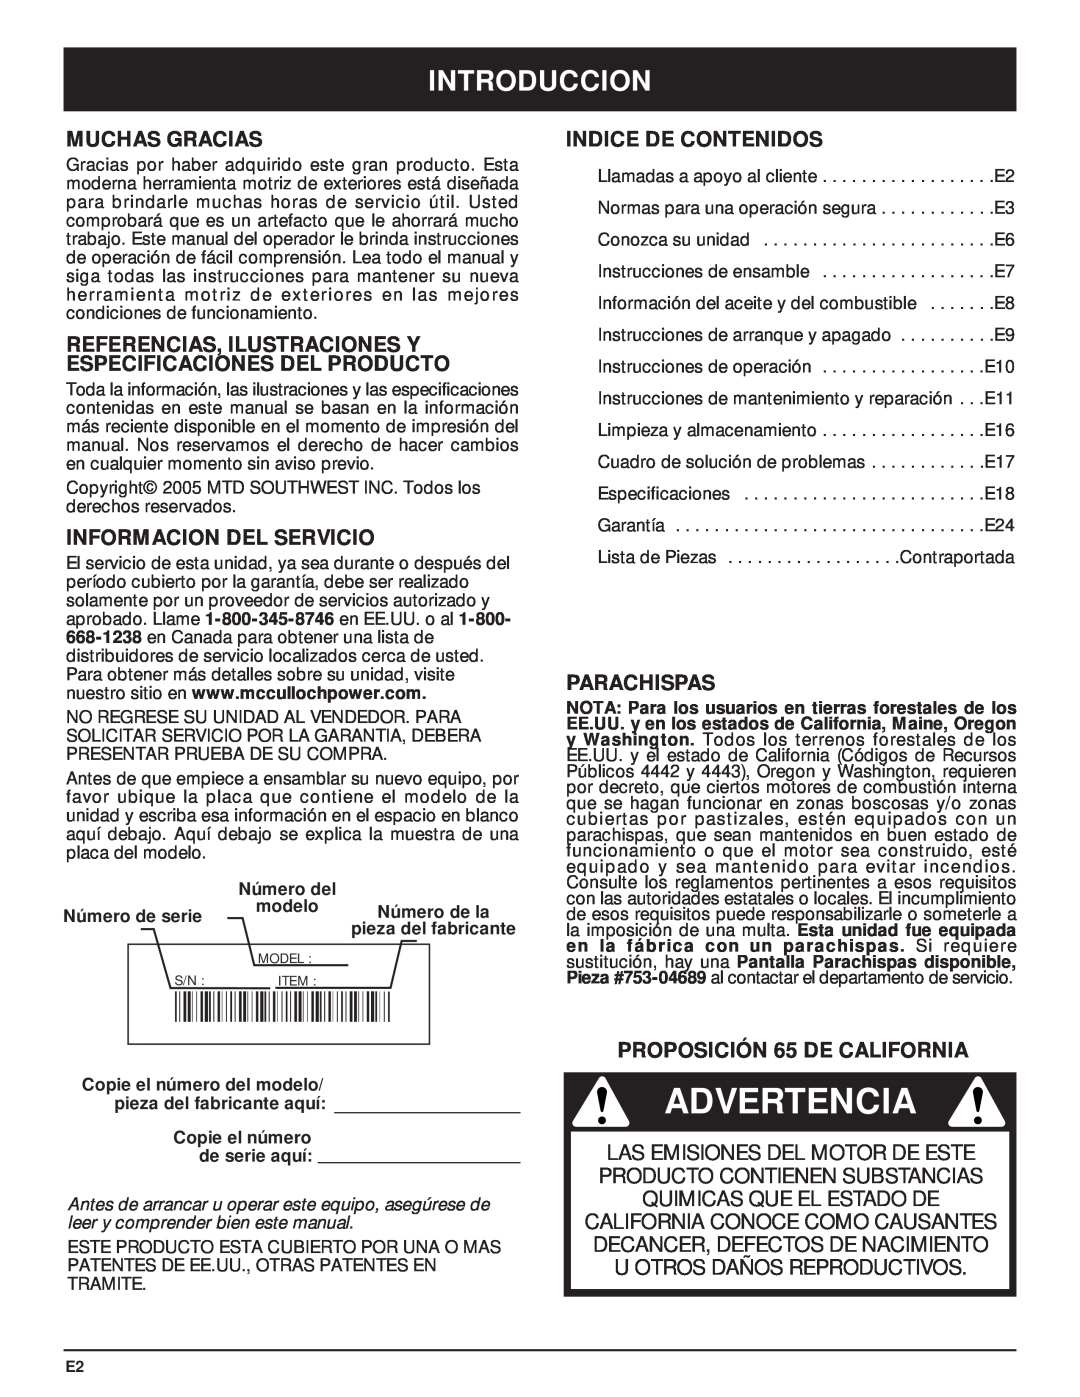 MTD MT700 manual Advertencia, Introduccion, Muchas Gracias, Referencias, Ilustraciones Y Especificaciones Del Producto 